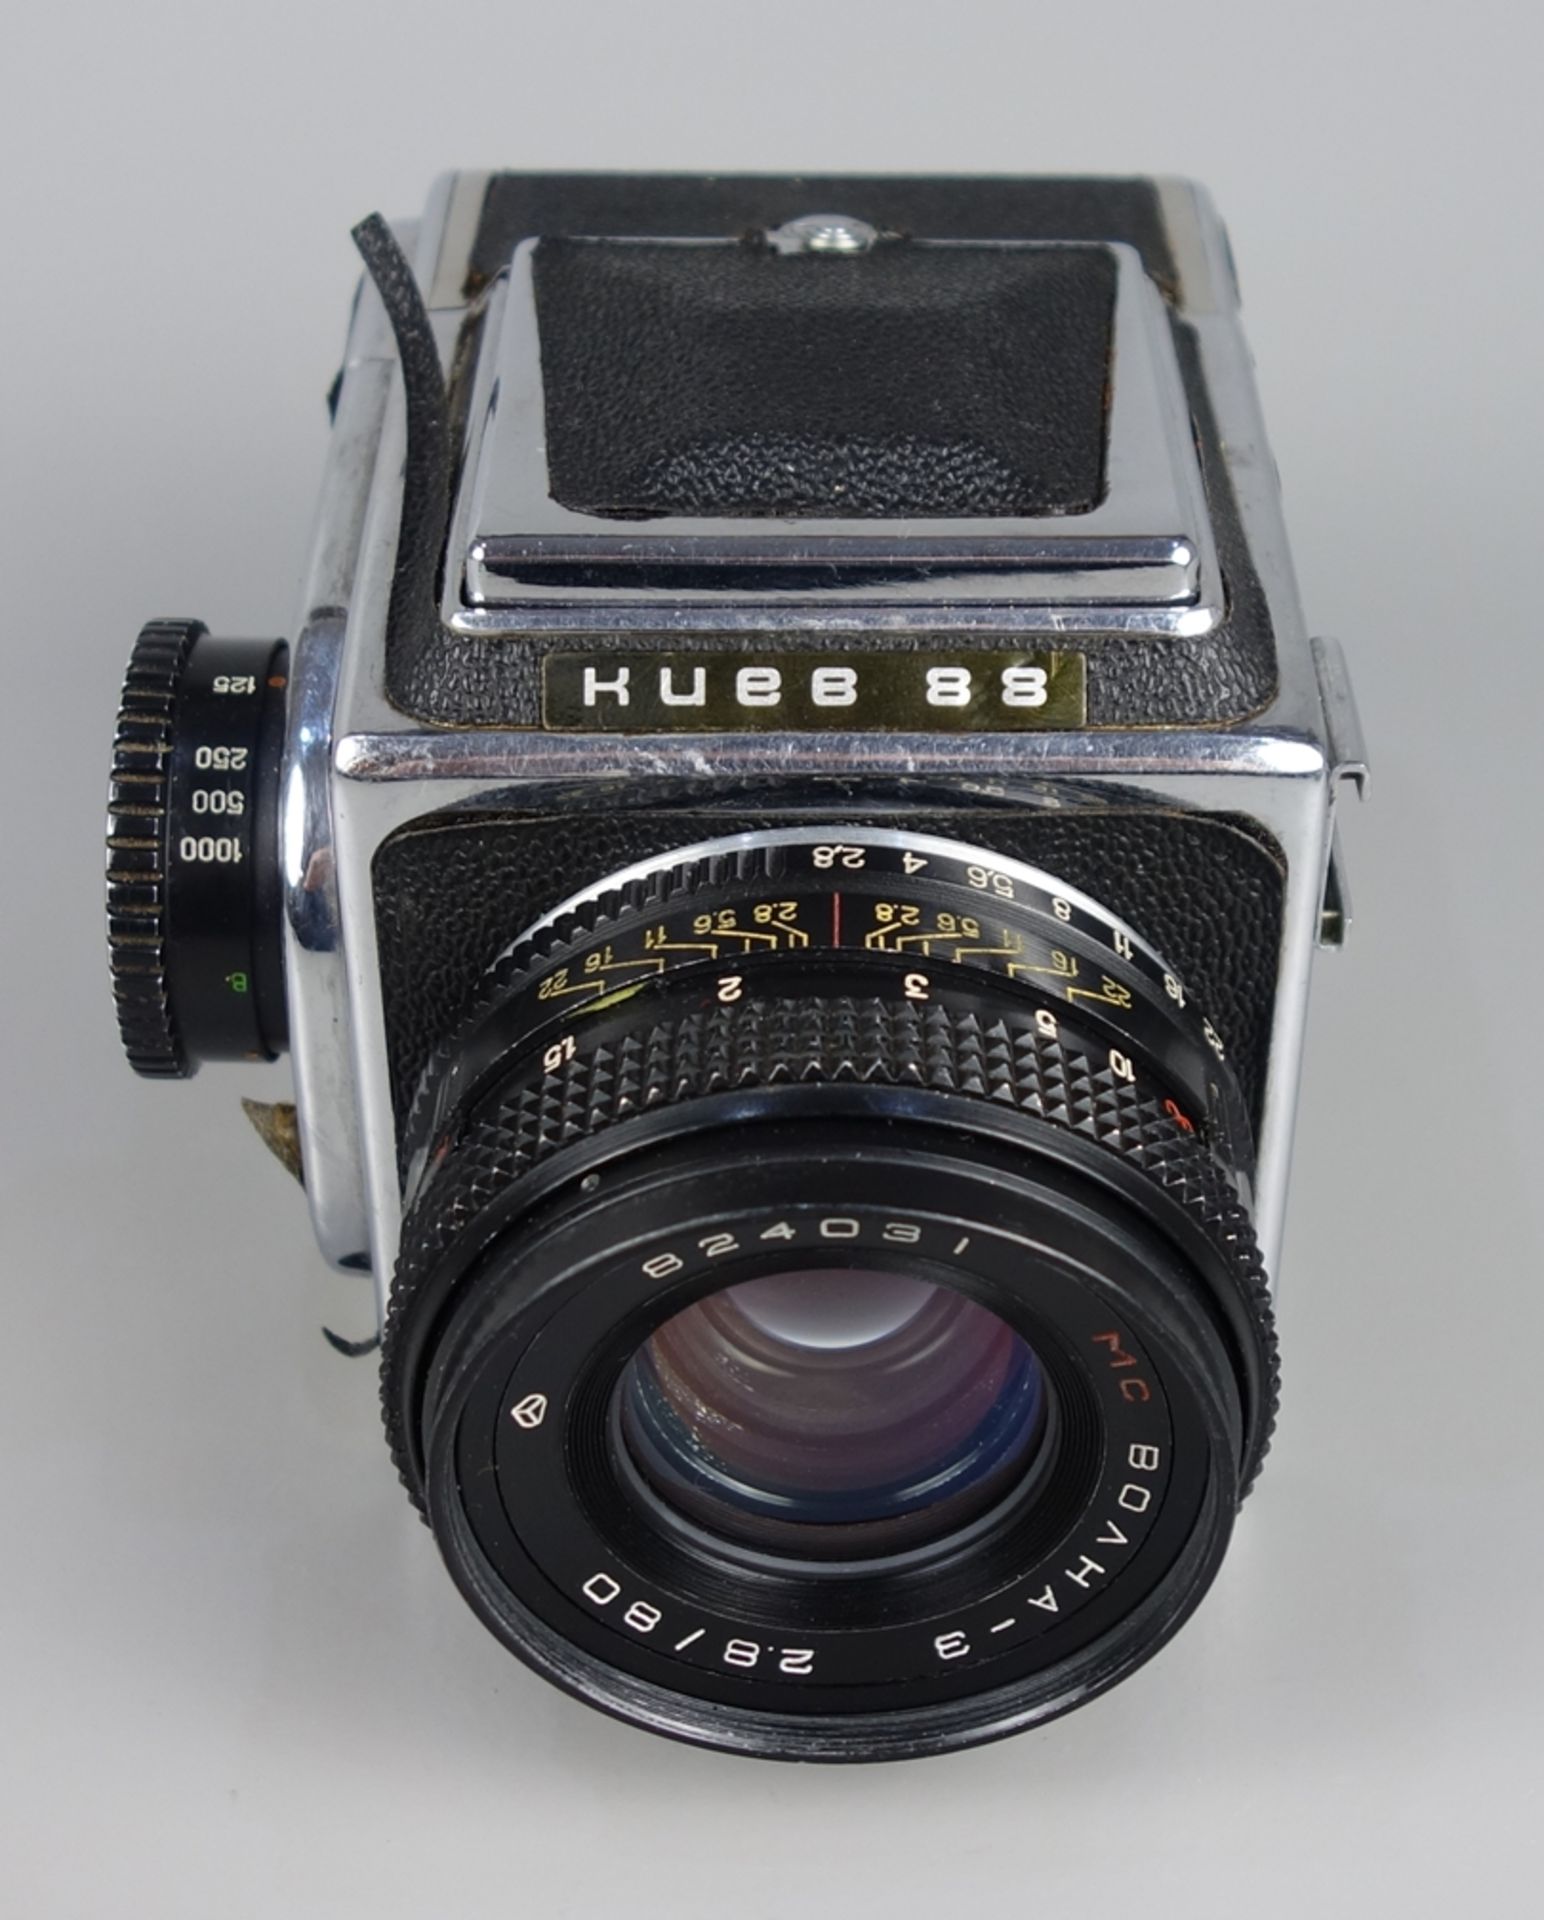 Mittelformatkamera "Kiev 88", mit Objektiv 1:2,8/80mm, in Original-Tasche mit Z - Bild 2 aus 6